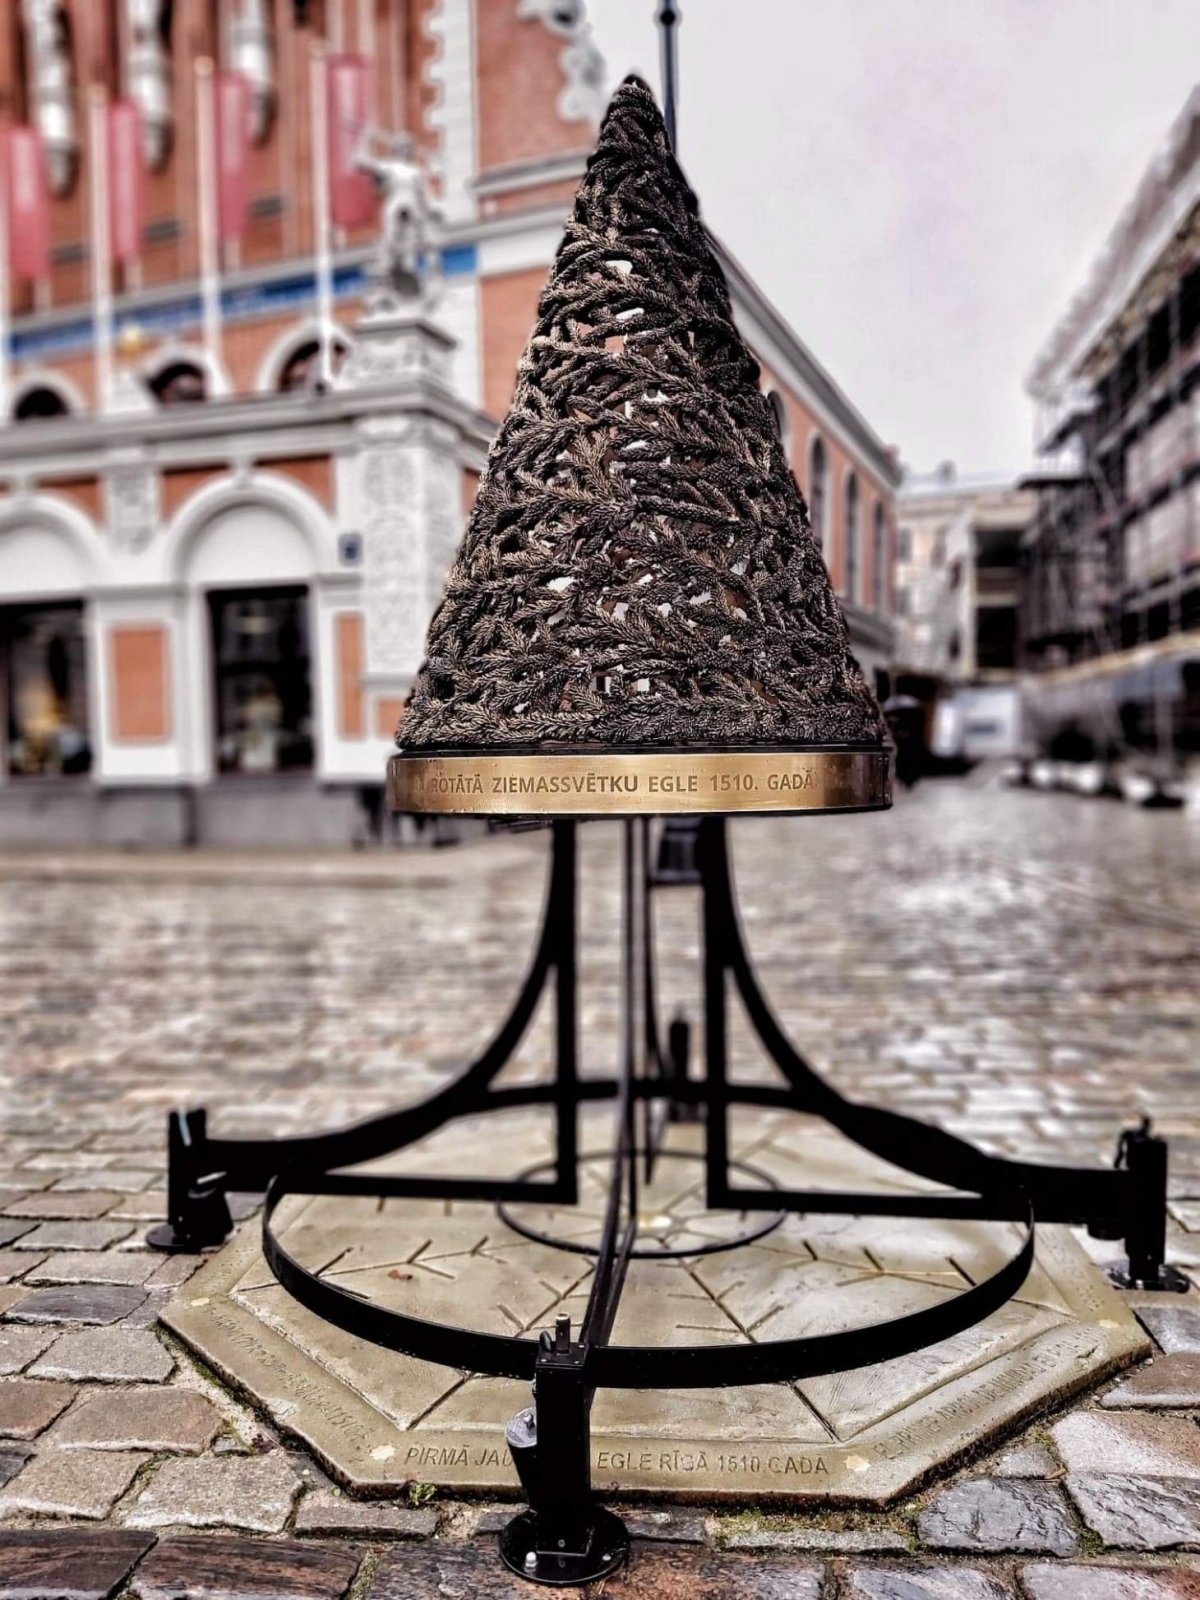 První vánoční stromek byl na náměstí vystaven poprvé v Rize...